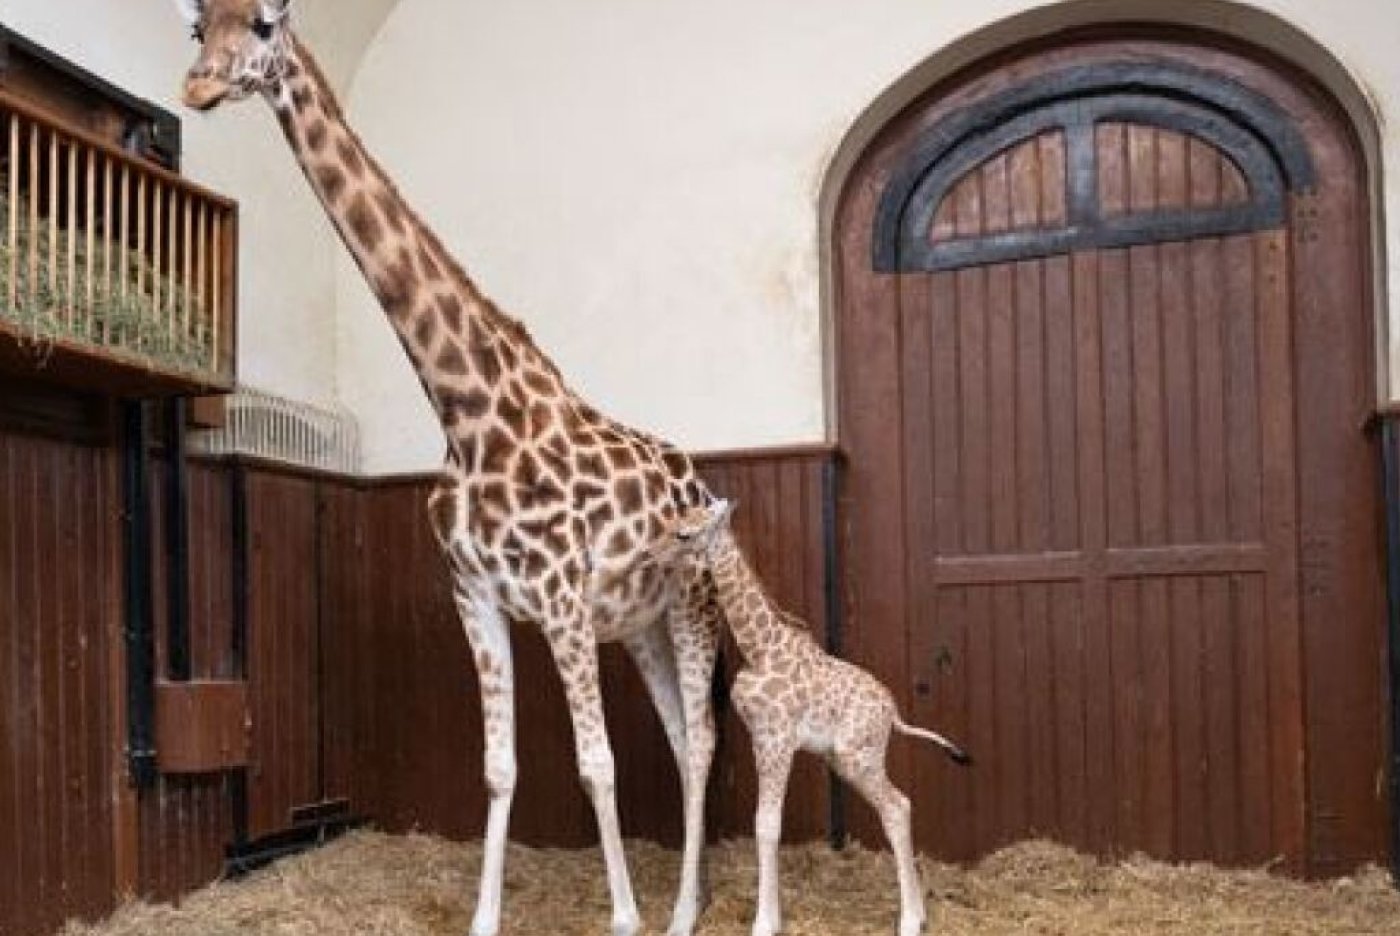 Le "petit" Vizuri se porte bien pèse 83 kg. L'espace intérieur des girafes est partiellement fermé au public pour offrir un peu de calme à la mère Sophie et à son girafon. Zoo de Bâle